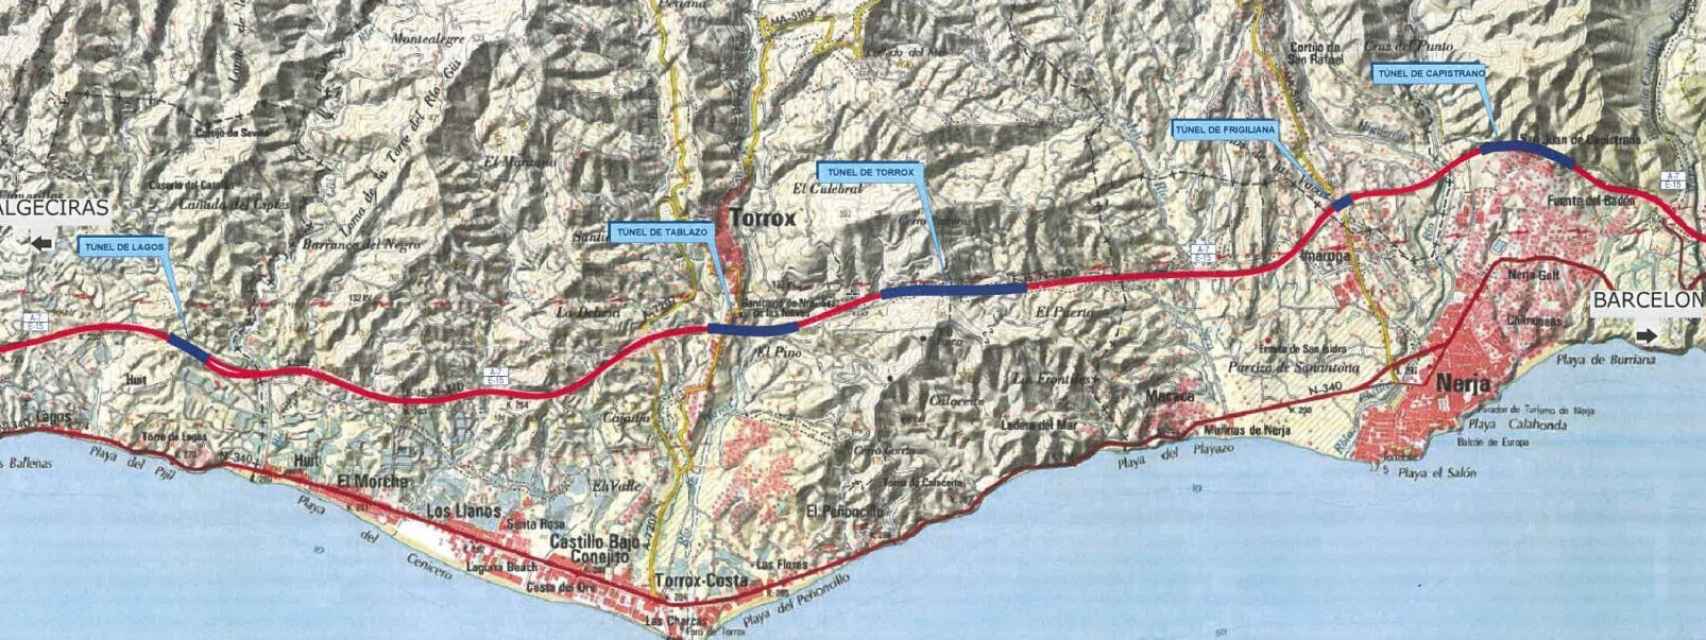 Plano de la parte oriental de la provincia con la localización de los túneles de la A-7.